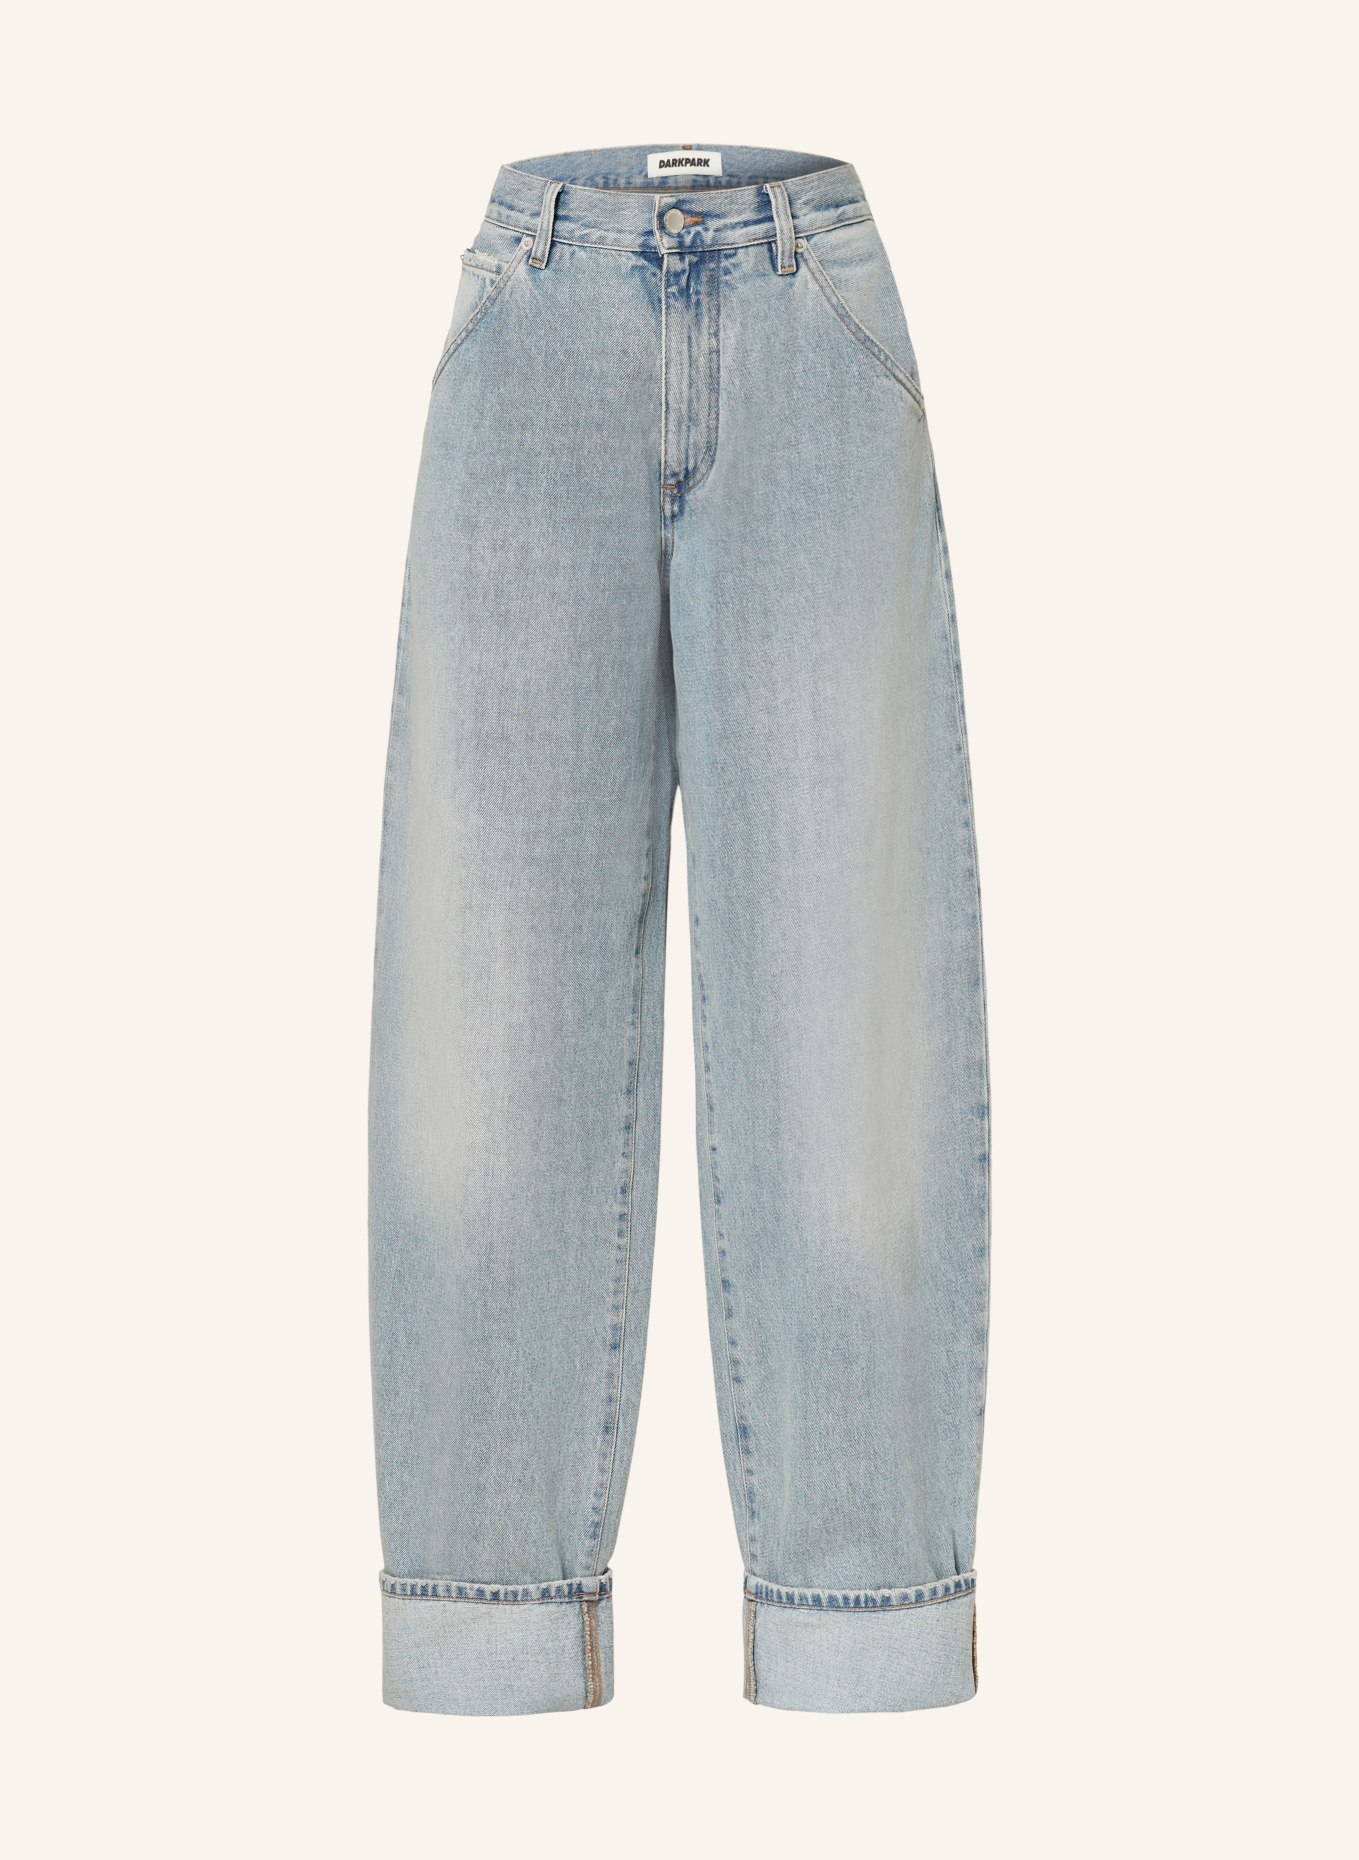 DARKPARK Straight Jeans KHRIS, Farbe: W069 LIL LIGHT (Bild 1)